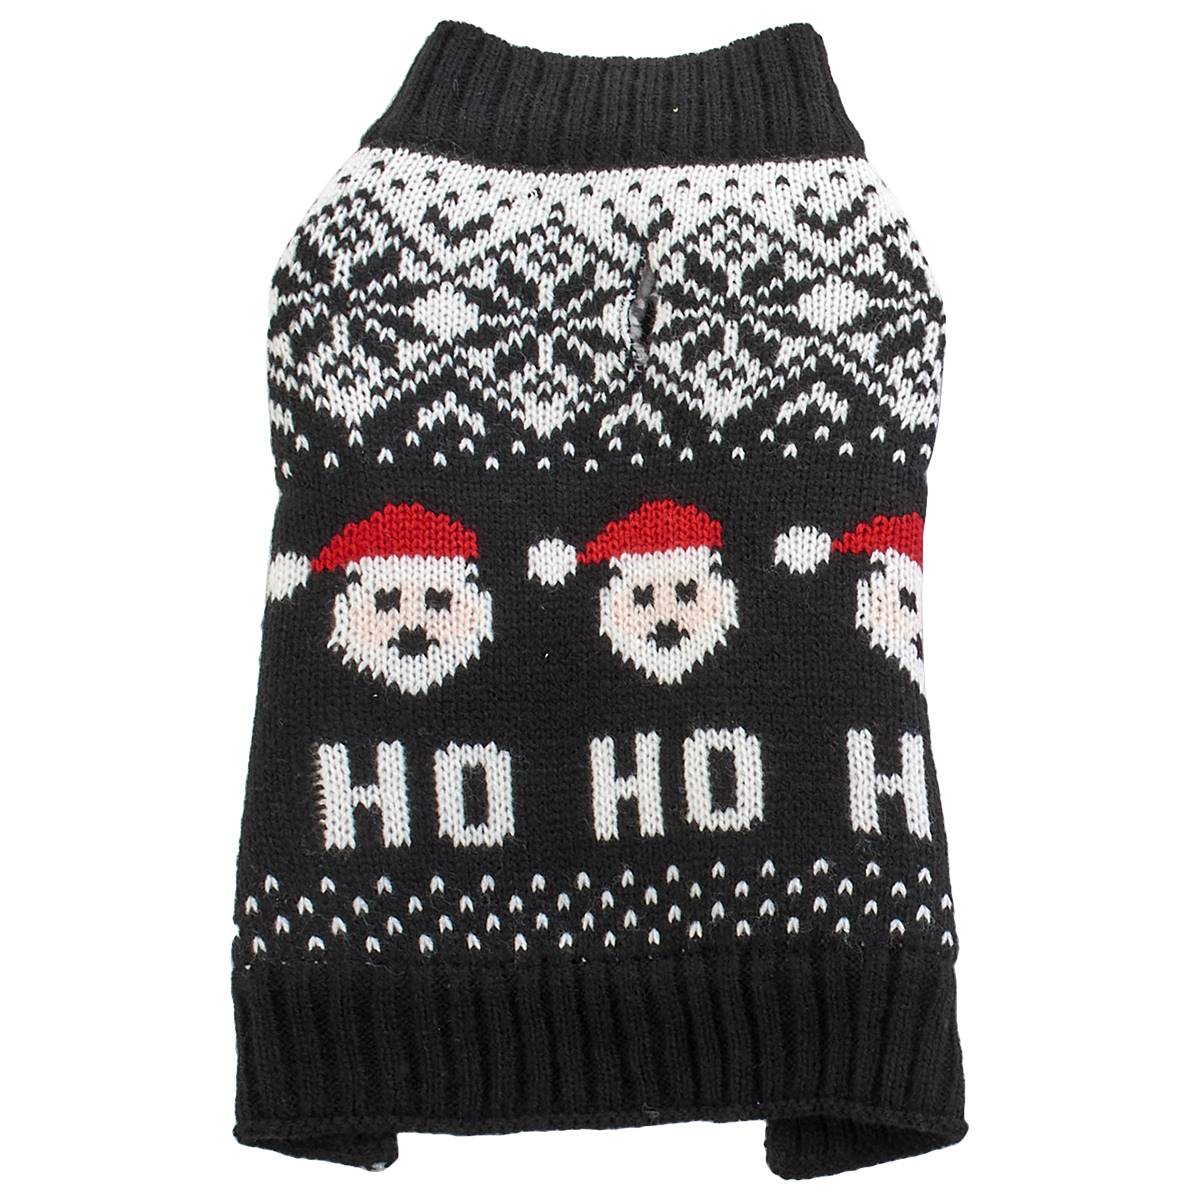 Northpaw Santa Jacquard Christmas Pet Sweater